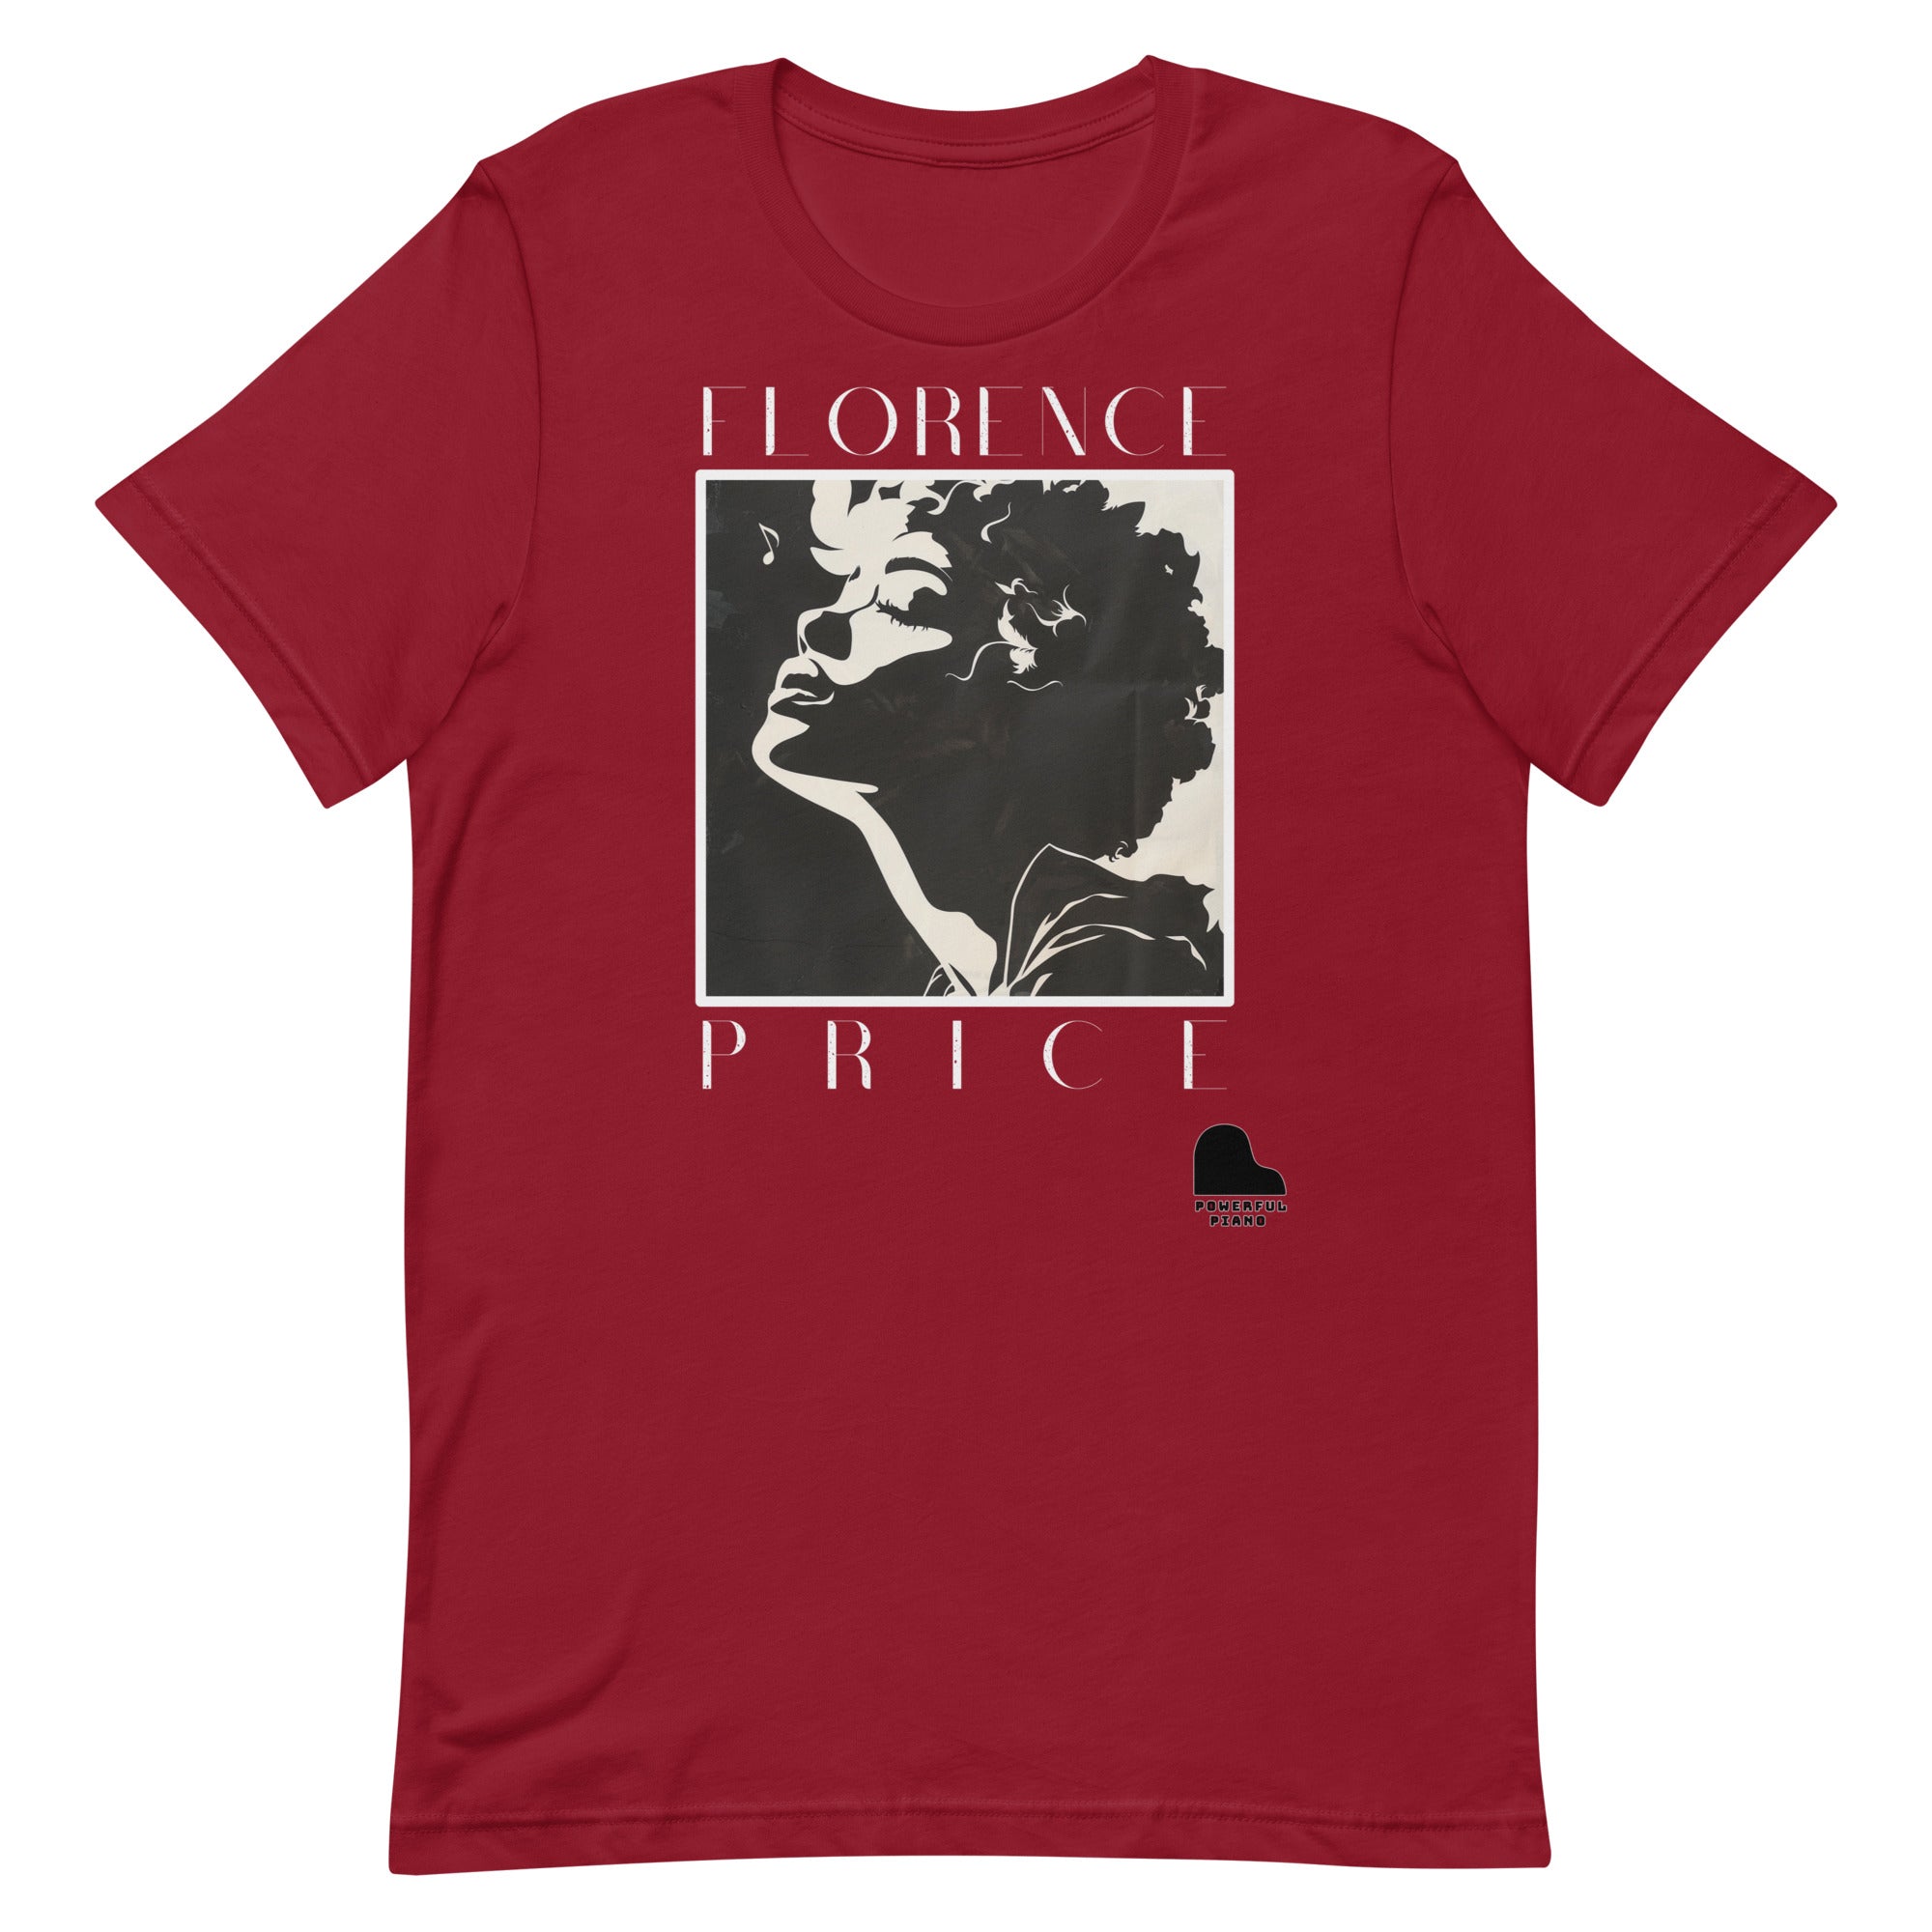 Florence Price T-Shirt